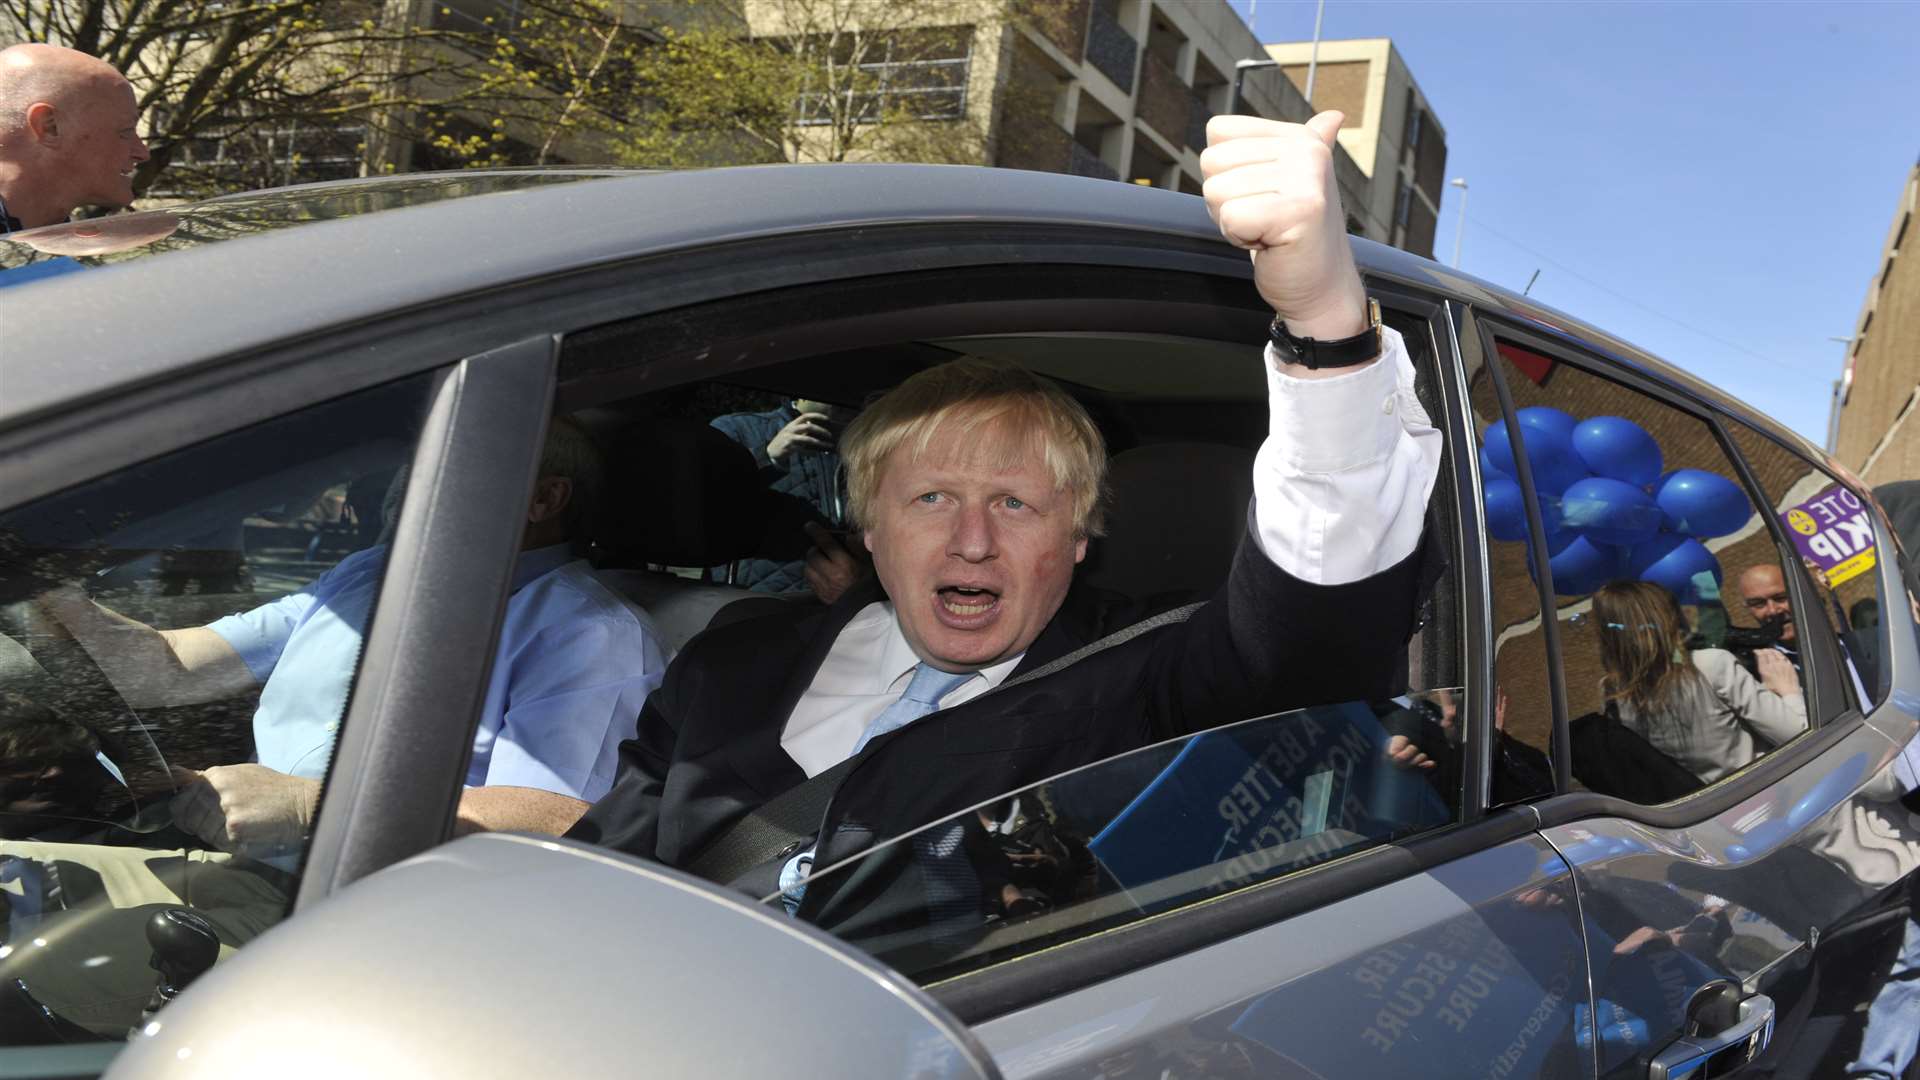 Boris leaves Ramsgate after a memorable visit